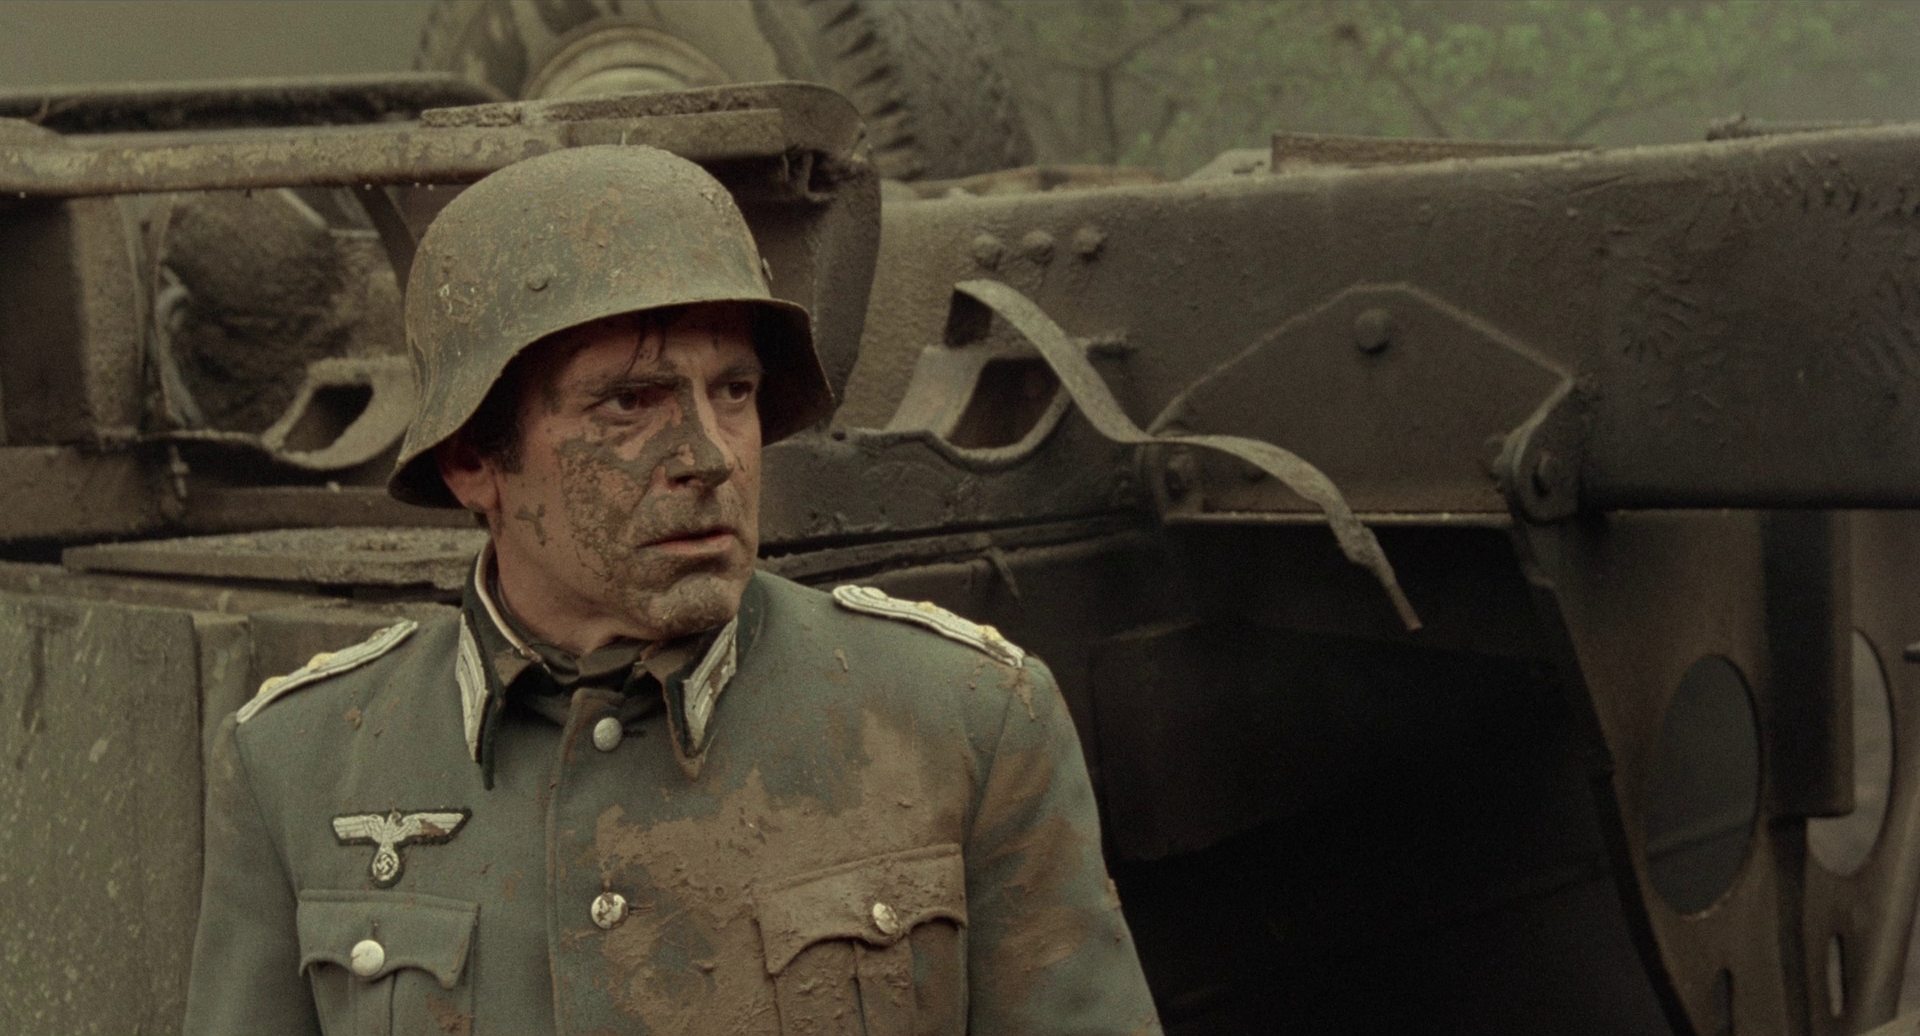 Maximilian Schell als Hauptmann Stransky mit aufgesetztem Stahlhelm, mit Matsch befleckt.